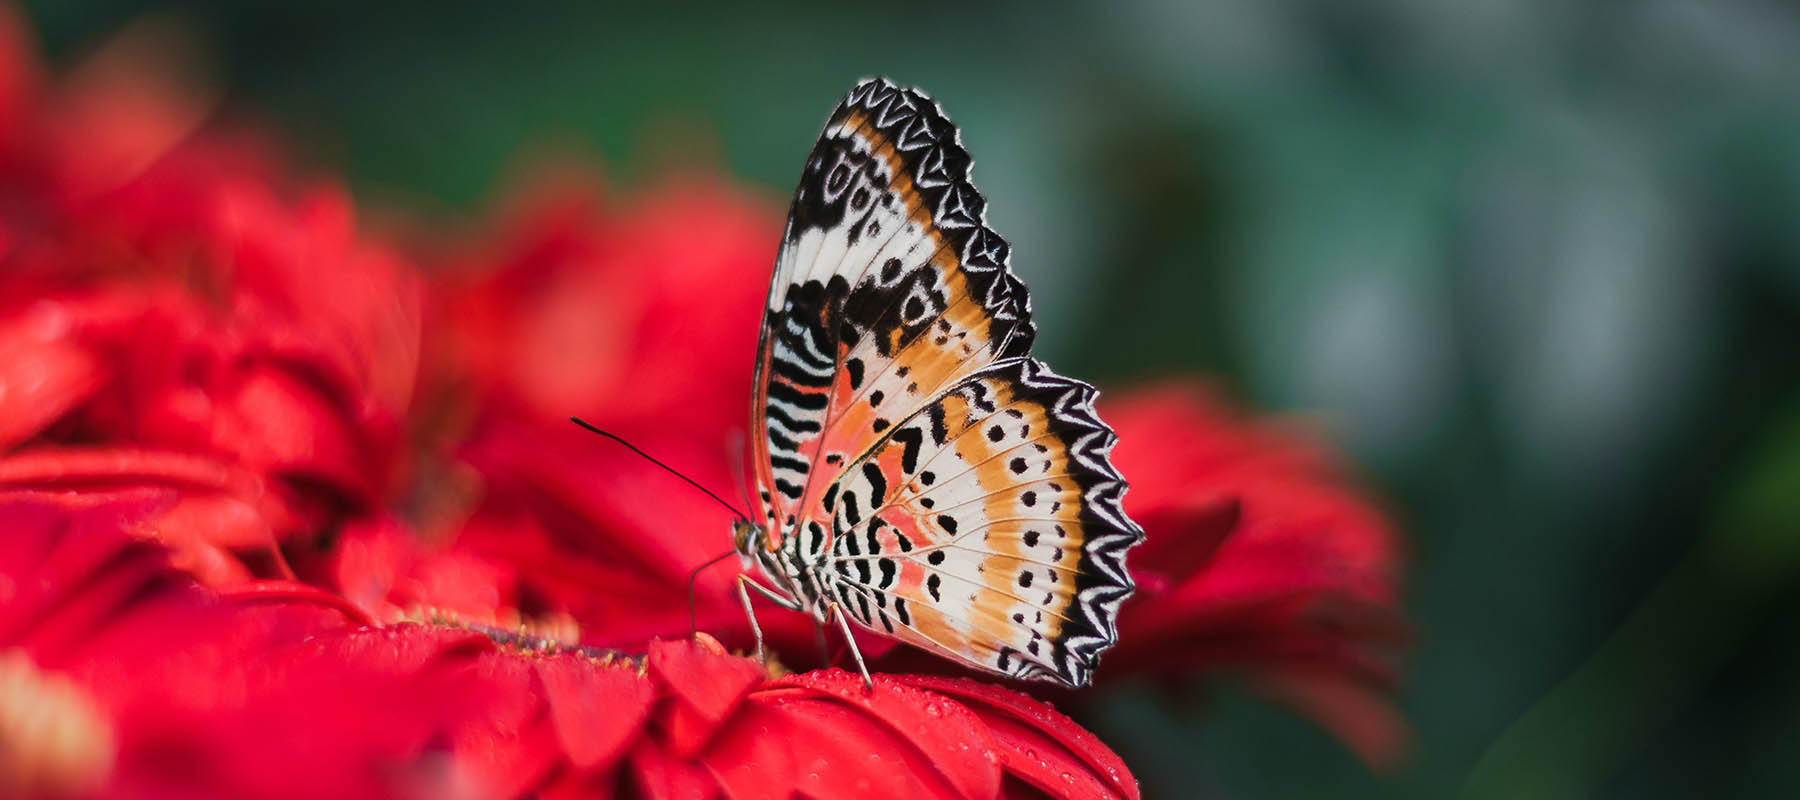 Orange monarch butterfly on red flower